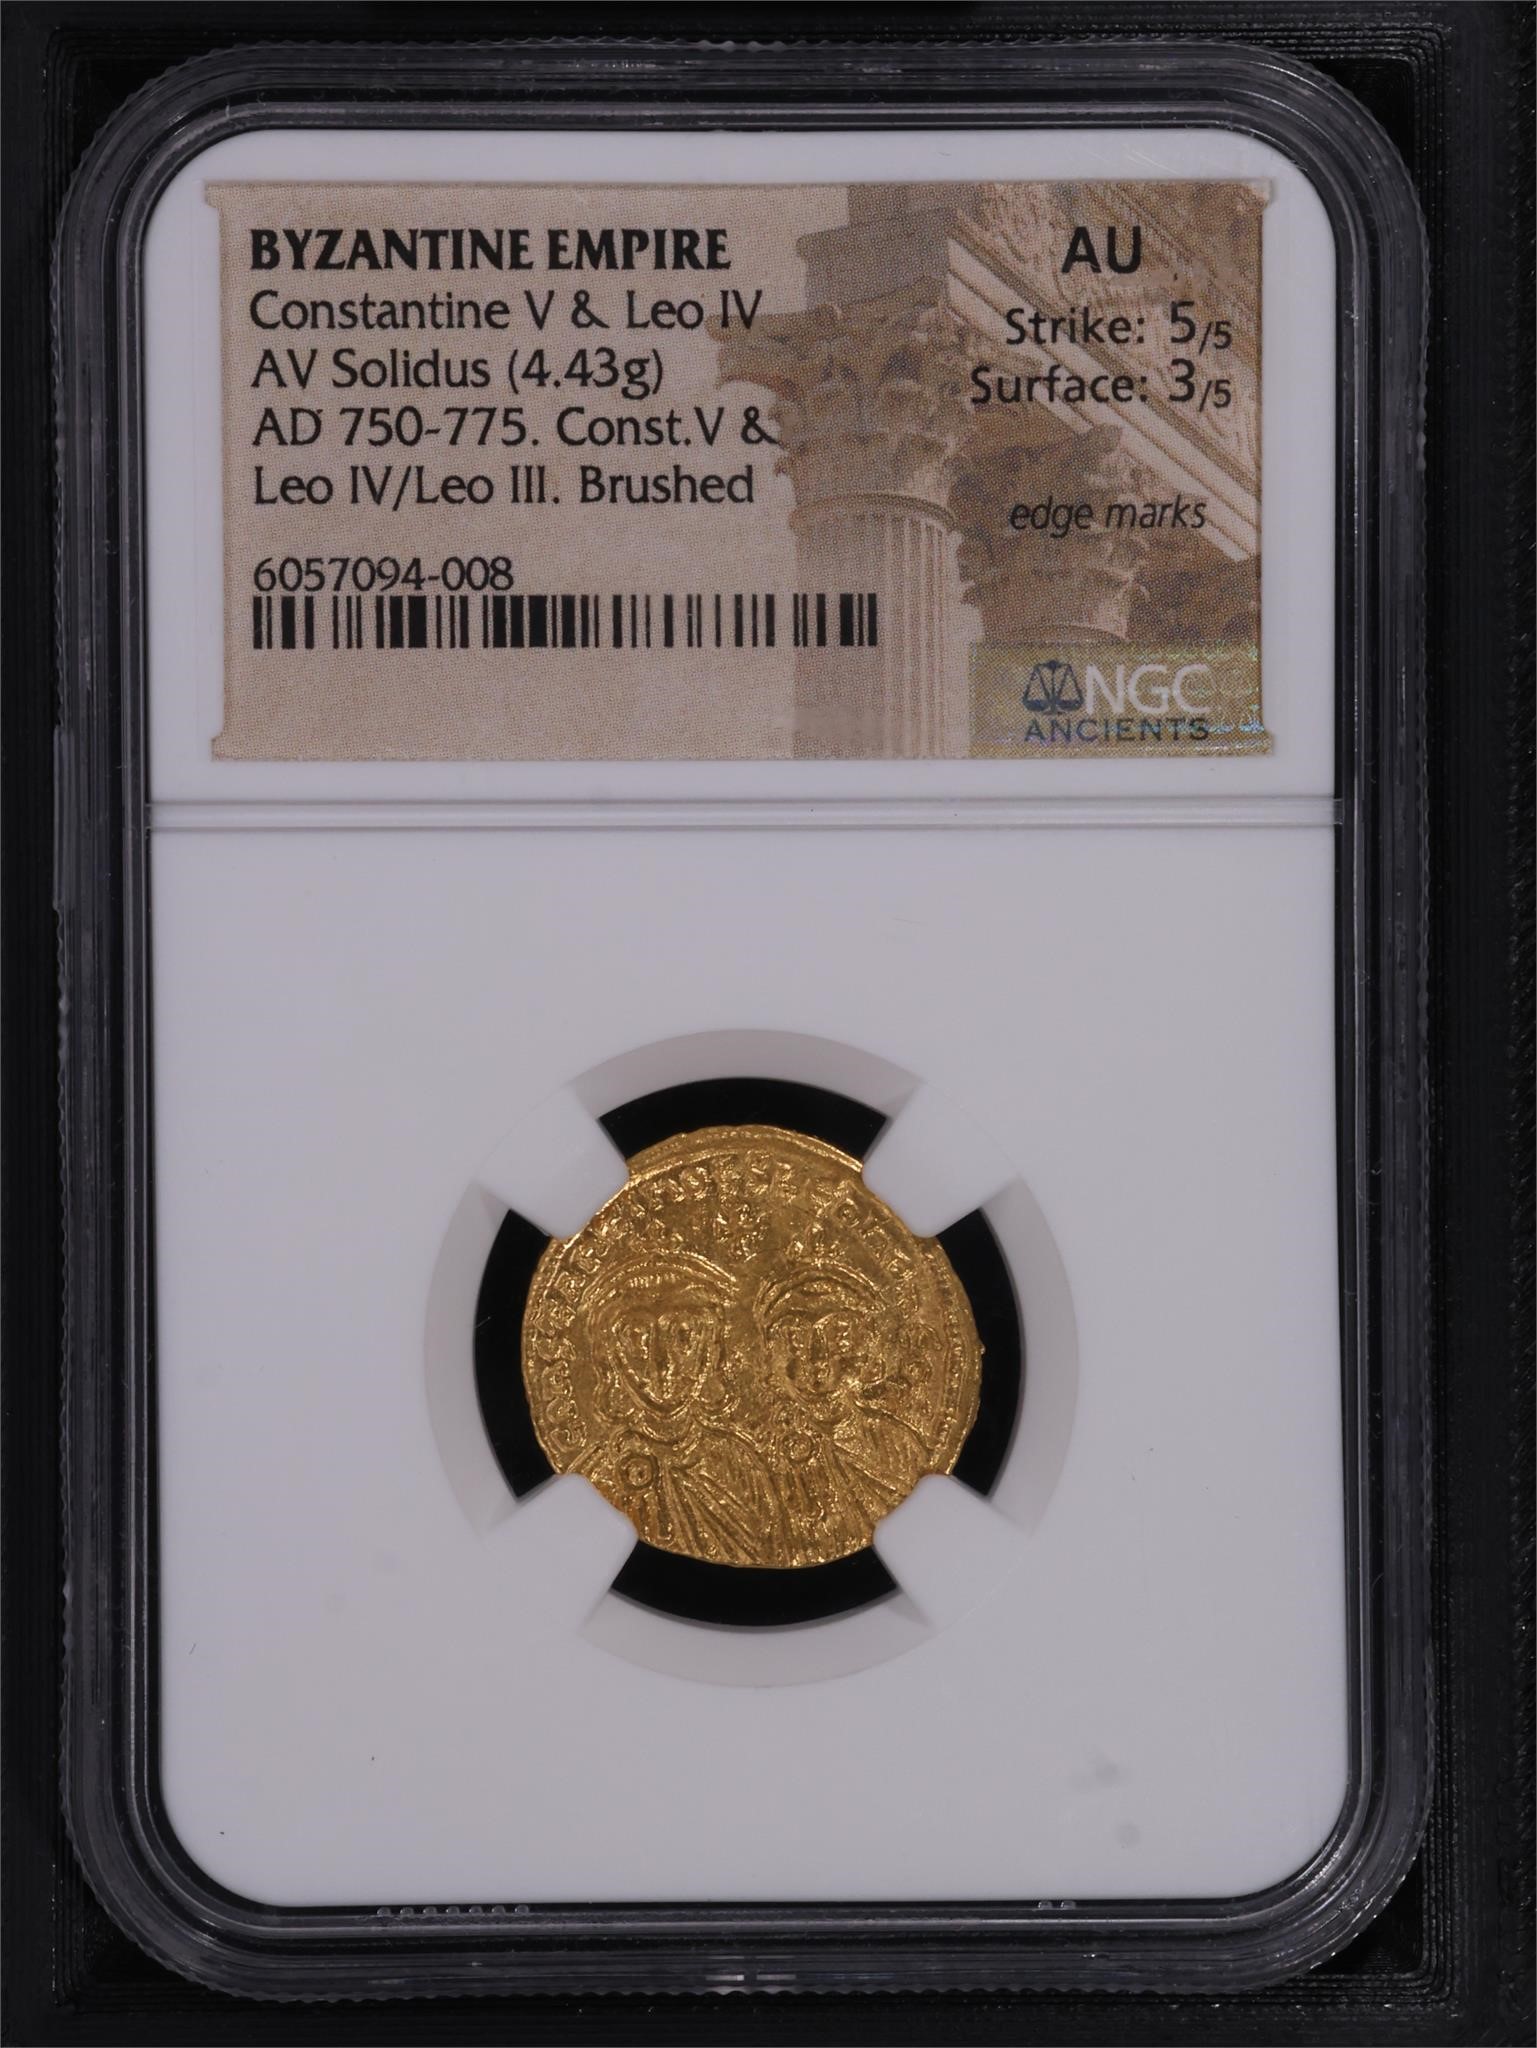 Rare Collectible Coin Showcase